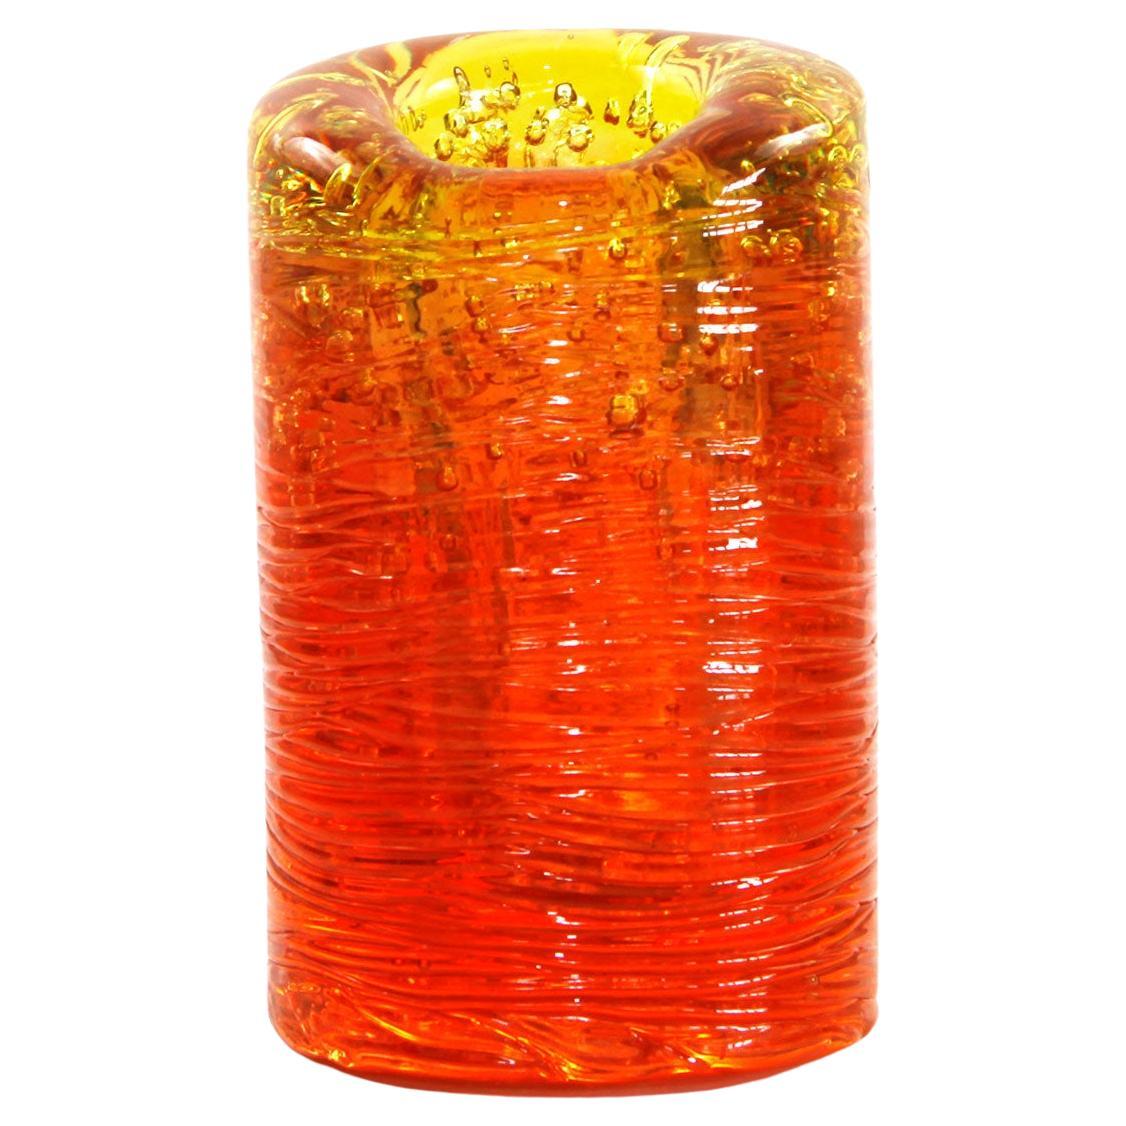 Jungle Contemporary Vase, Large, in Monochrome Orange by Jacopo Foggini For Sale